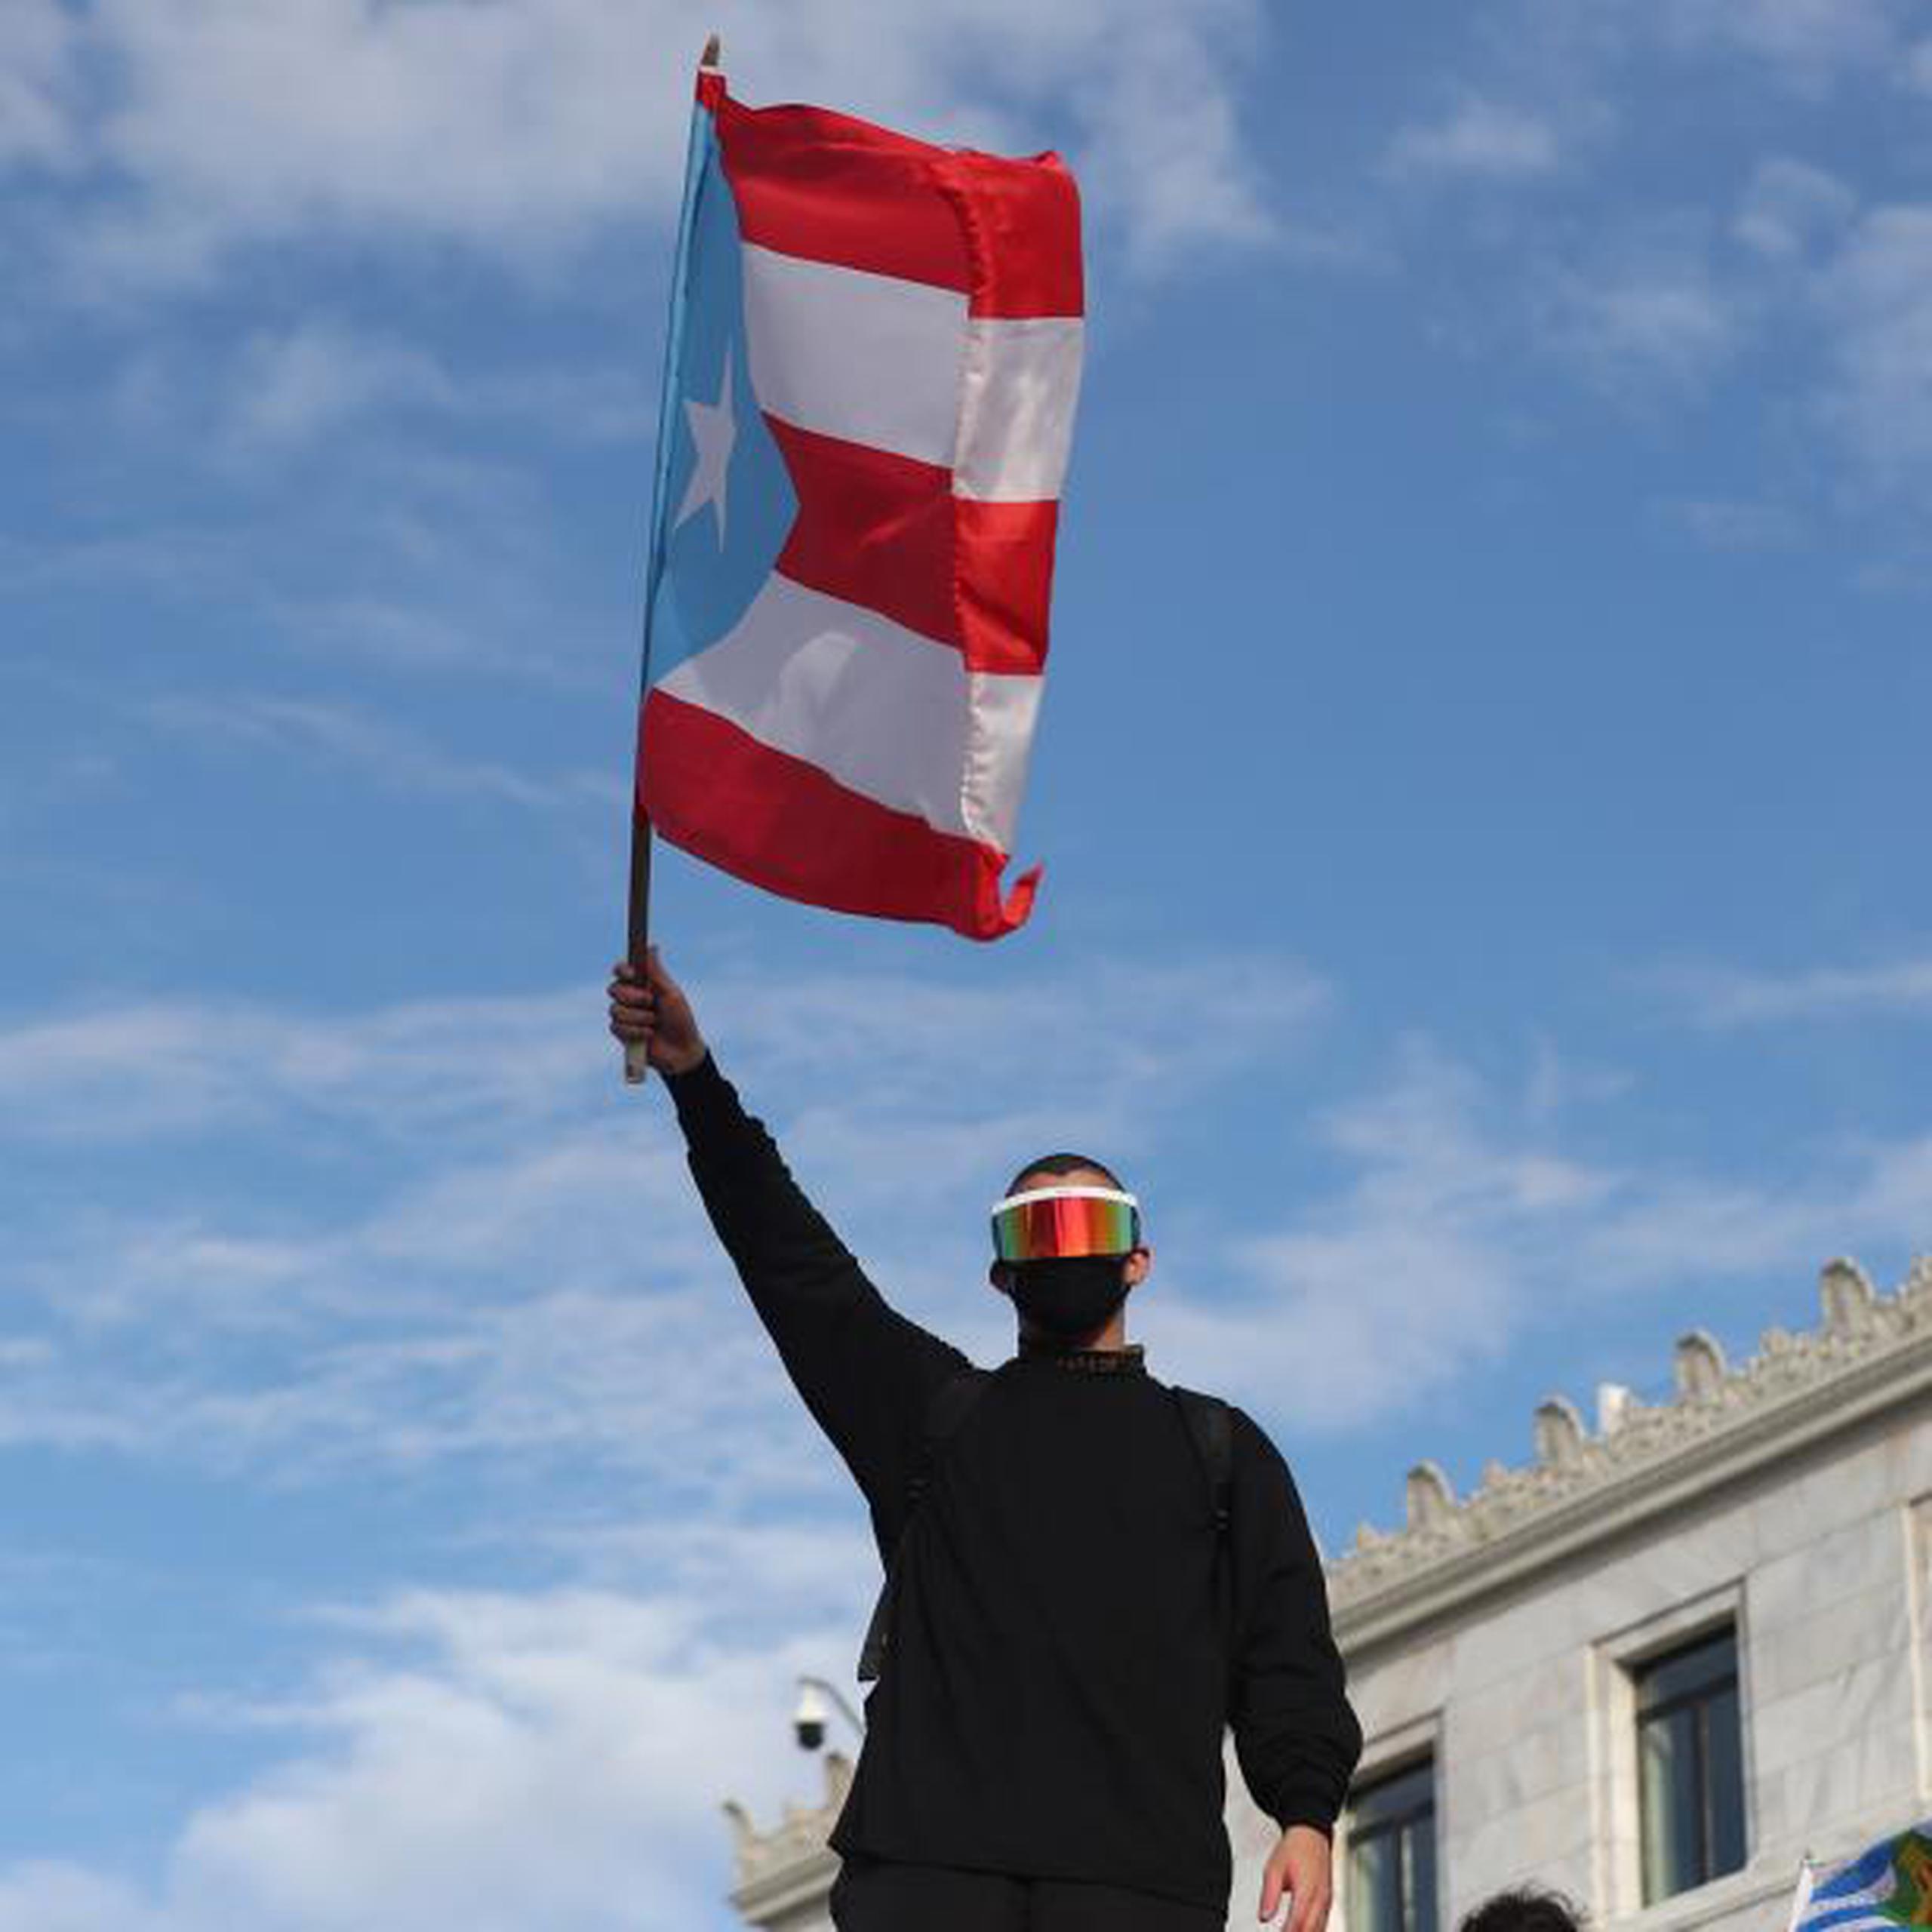 La manifestación terminó de madrugada con la llegada del Rey Charlie, que convocó a sobre 3,000 motociclistas que lograron entrar a el Viejo San Juan para reclamar la dimisión de Rosselló. (juan.martinez@gfrmedia.com)